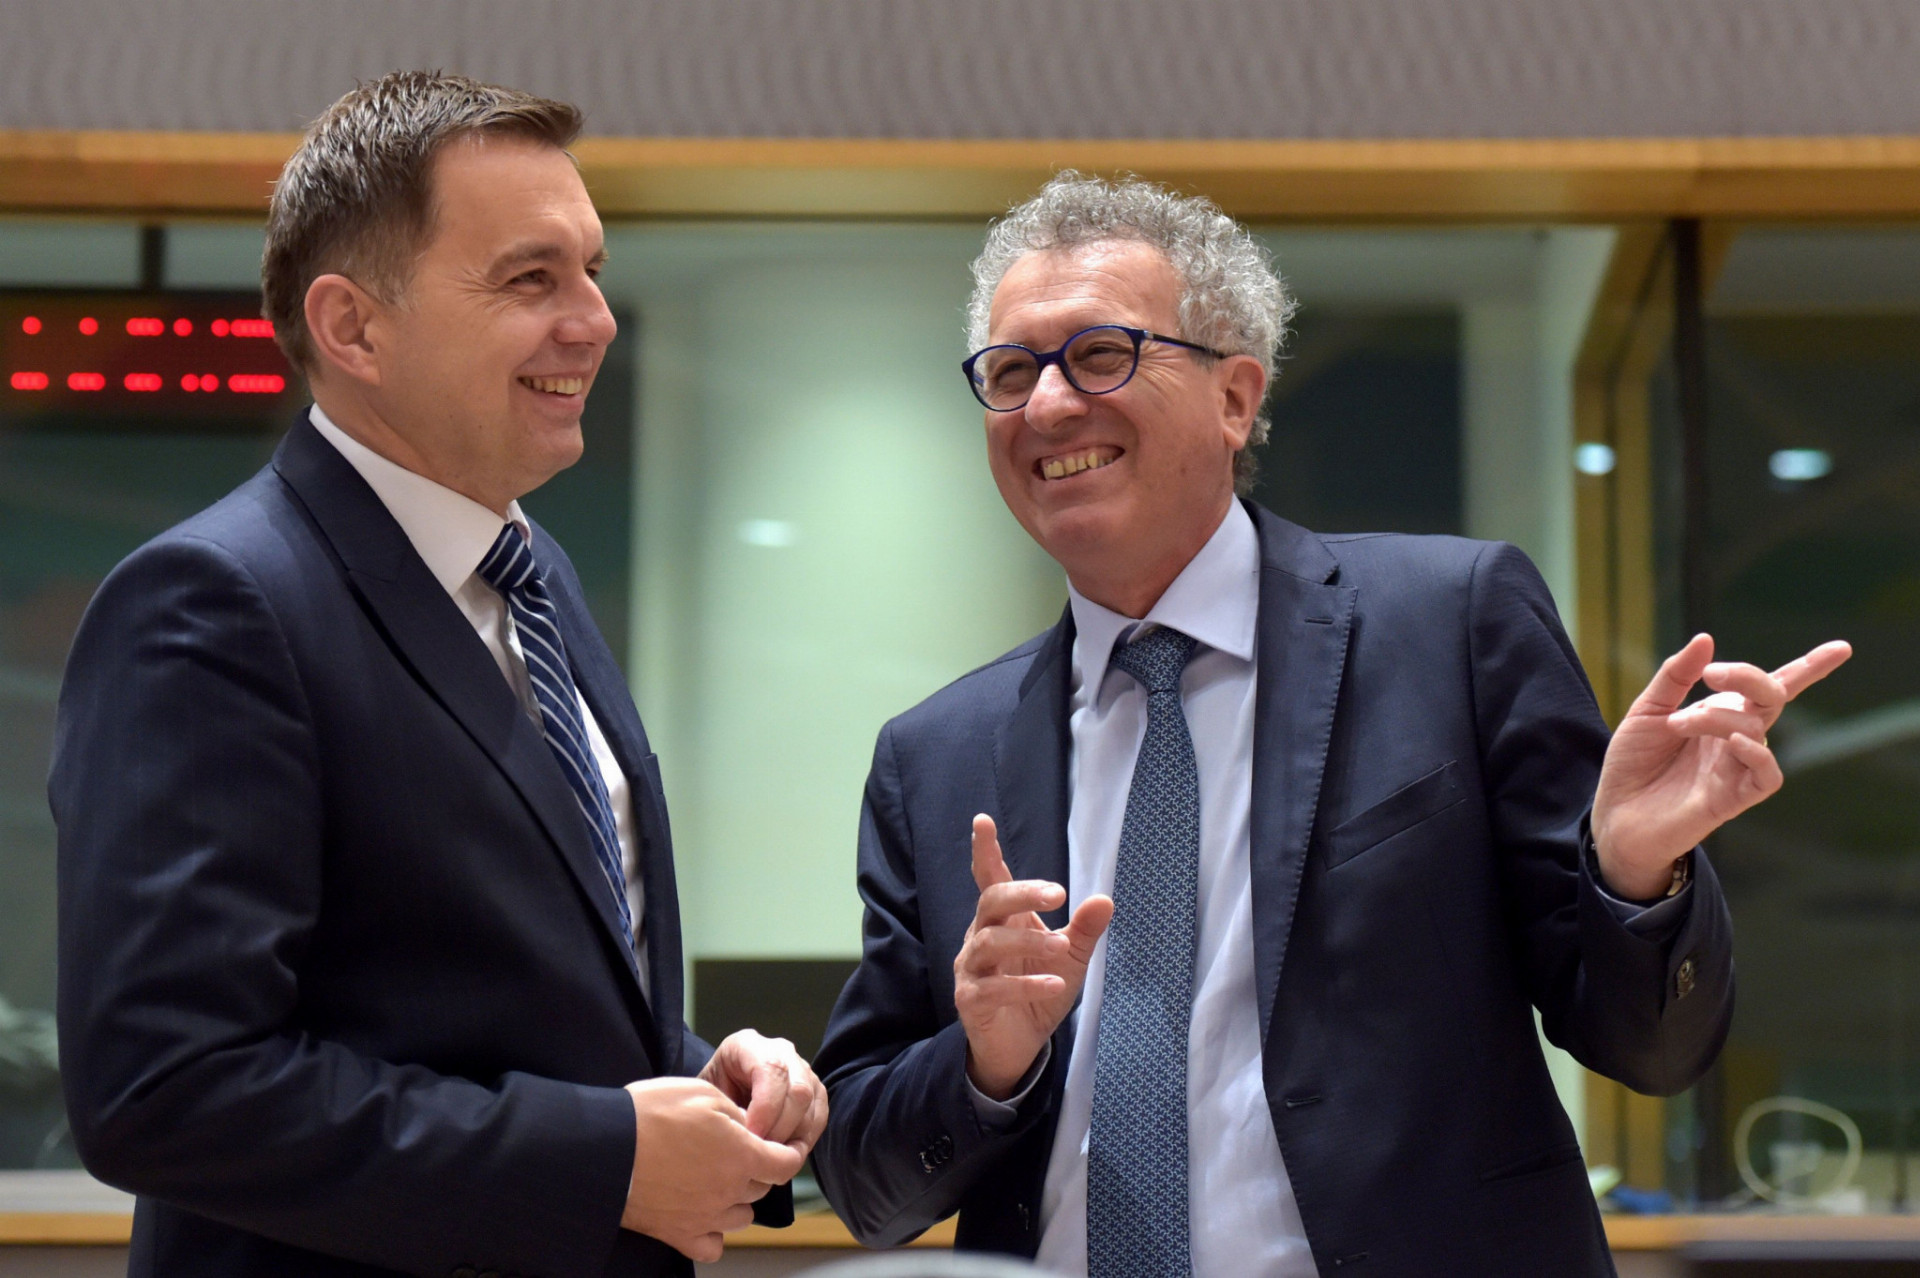 zavedení dane z finančných transakcií rokujú európski ministri financií už päť rokov. Na snímke luxemburský minister financií Pierre Gramegna (v strede) na jednom z dôležitých stretnutí k tejto téme z konca roku 2015.